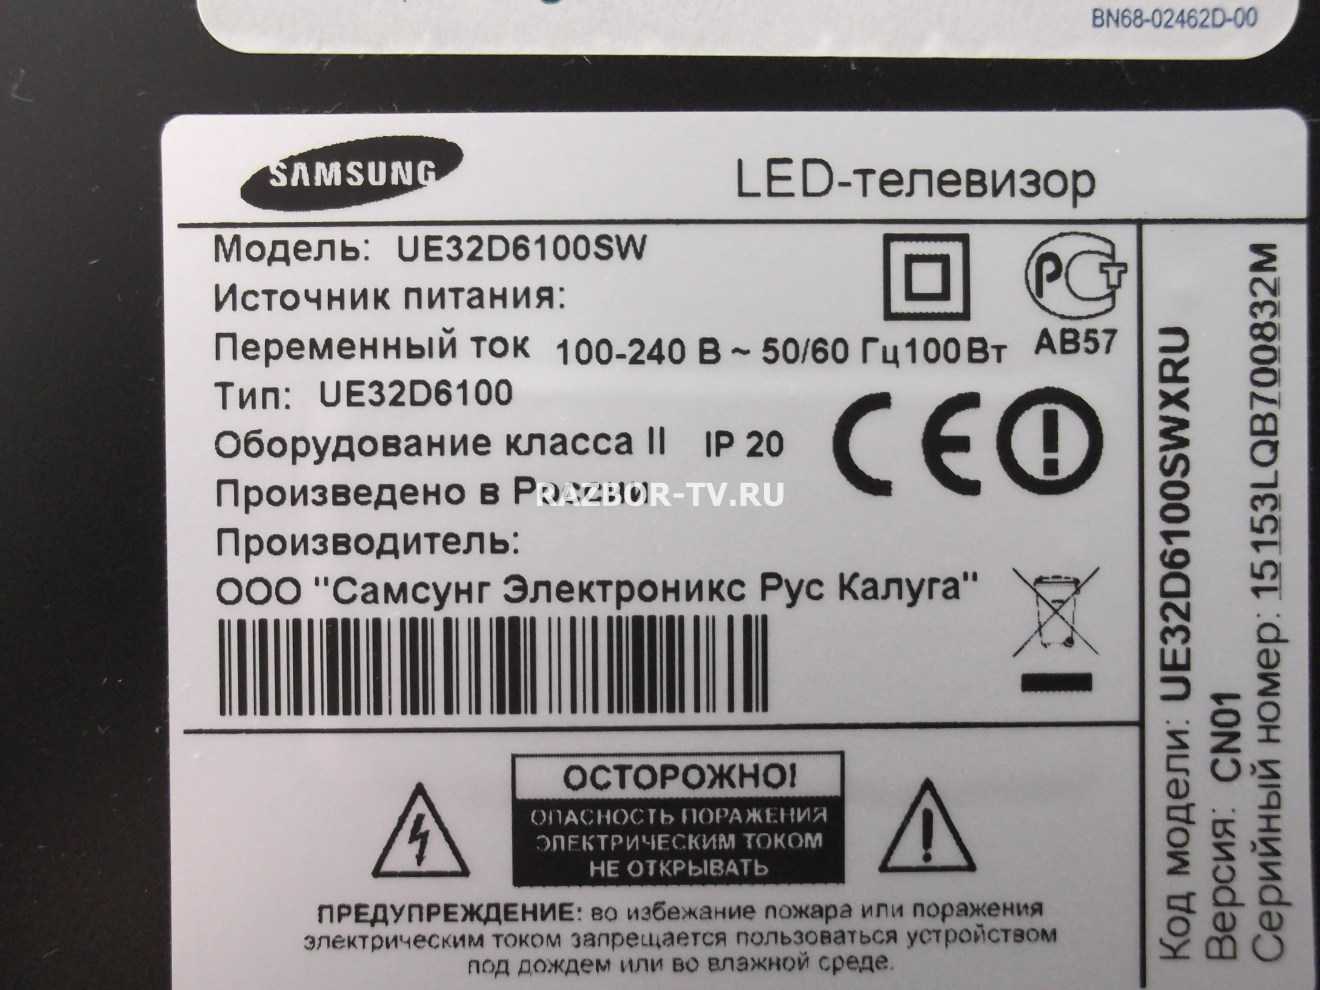 Название телевизоров lg. Телевизор Samsung 32 серийный номер. Серийный номер телевизора LG. Samsung Smart TV серийный номер. Ue32d6100 блок питания.